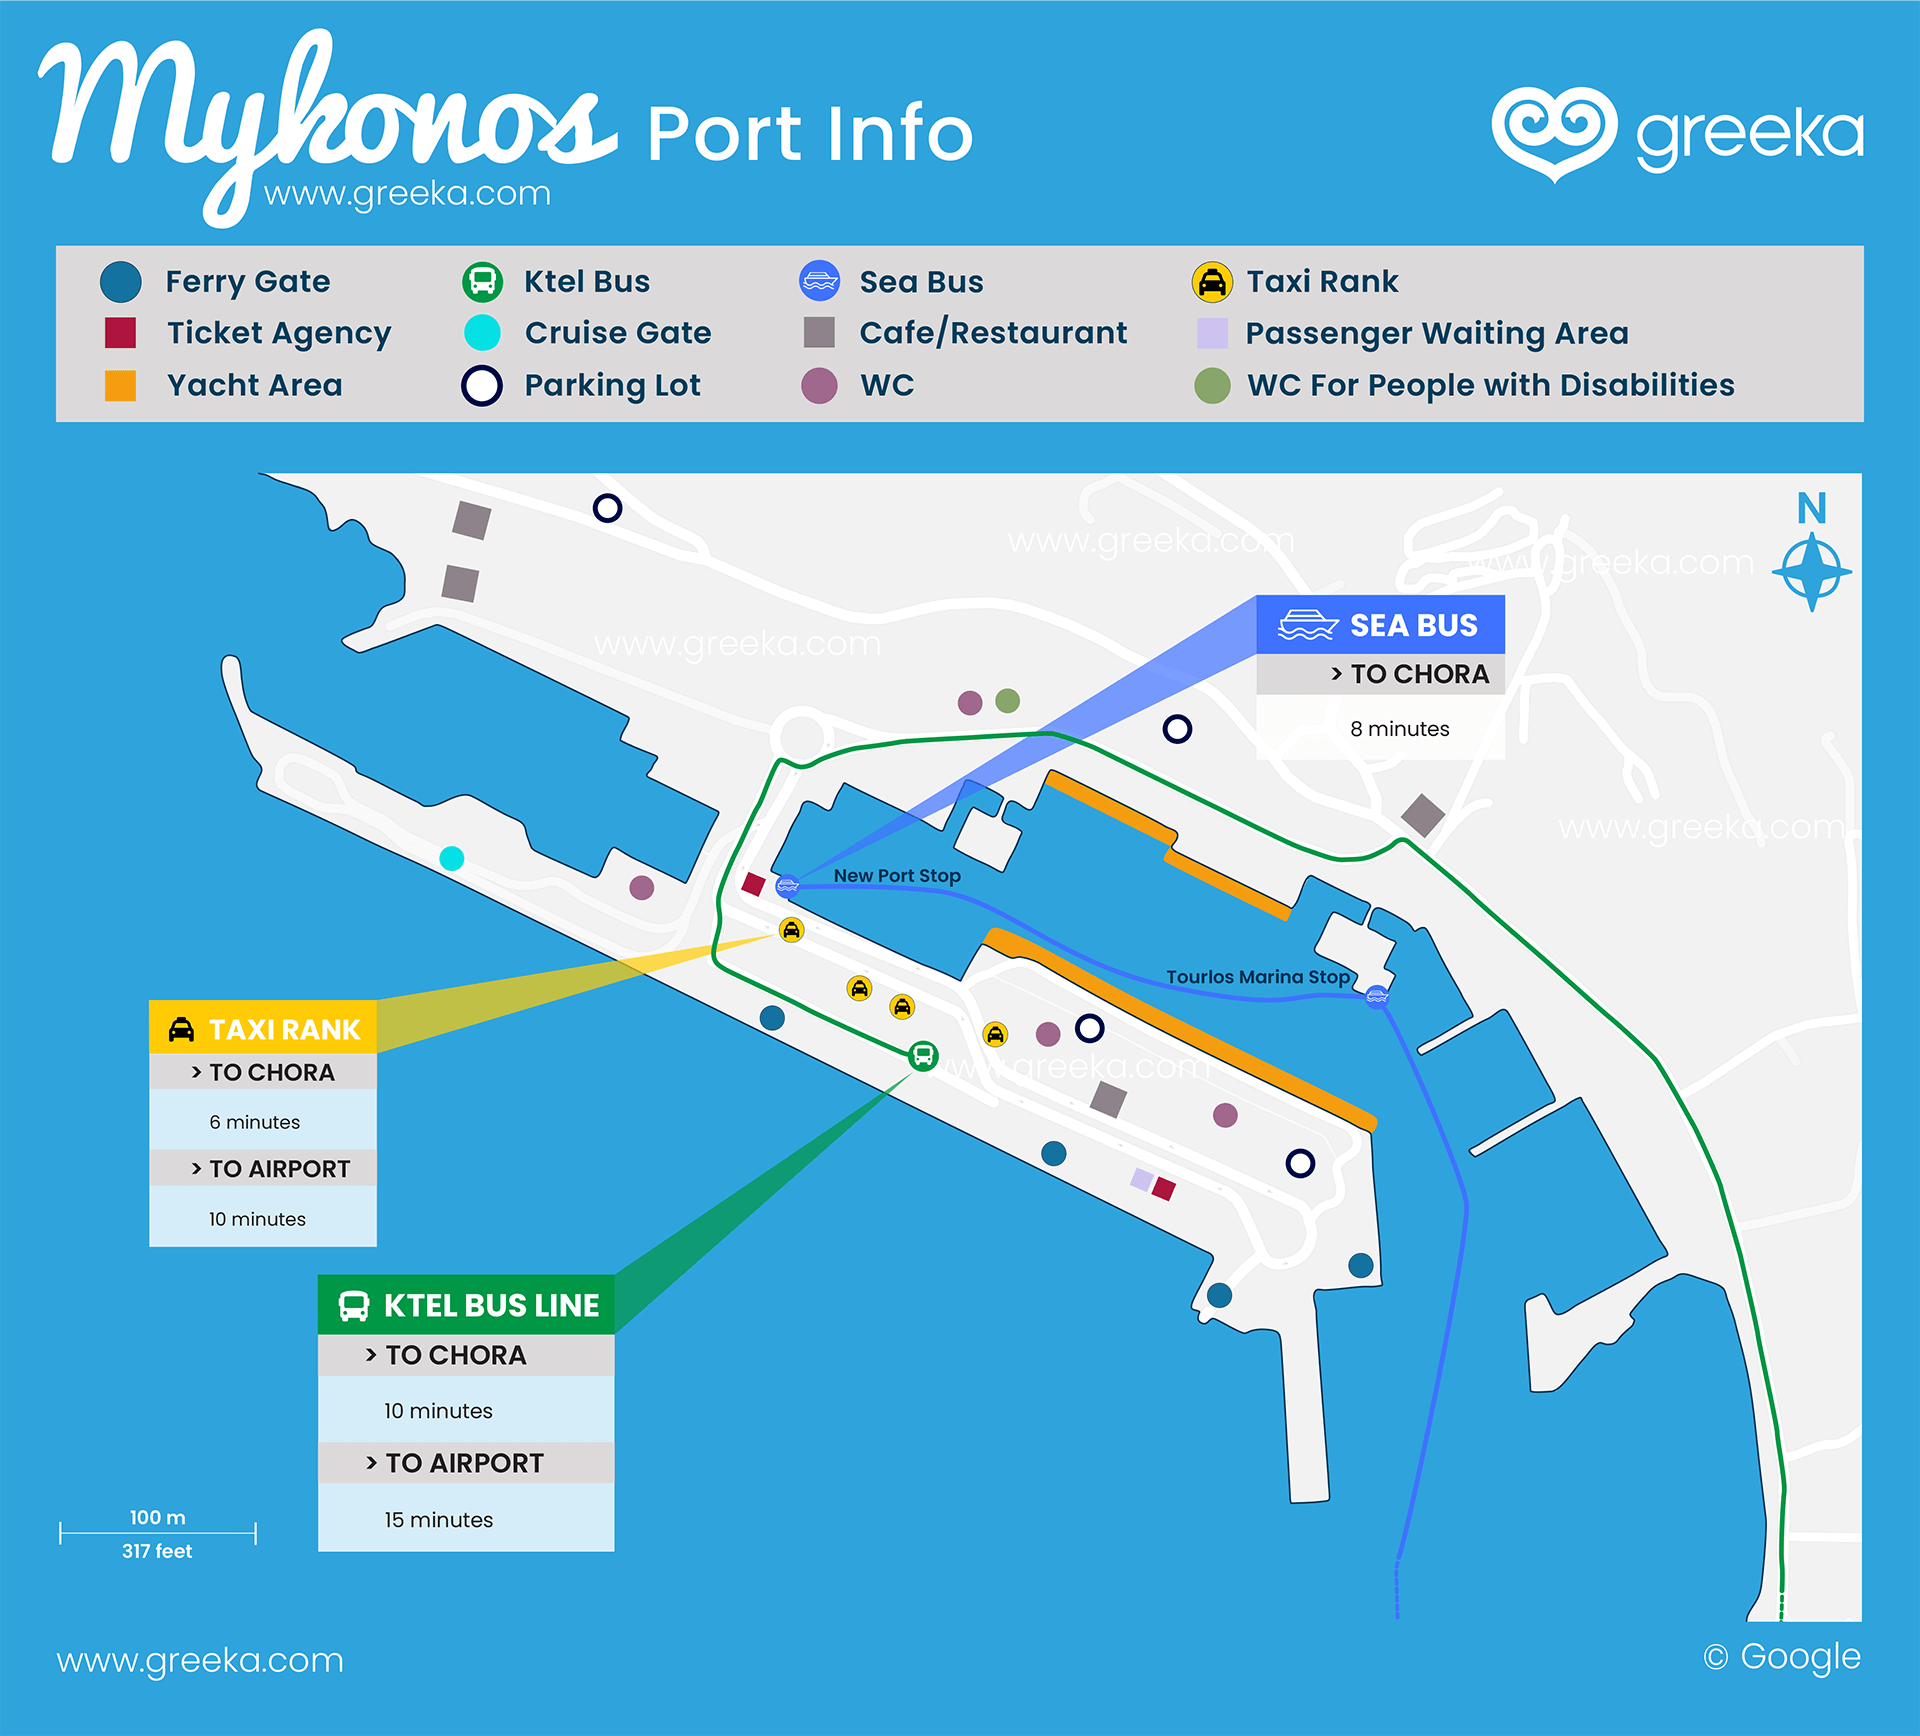 ncl cruise port in mykonos